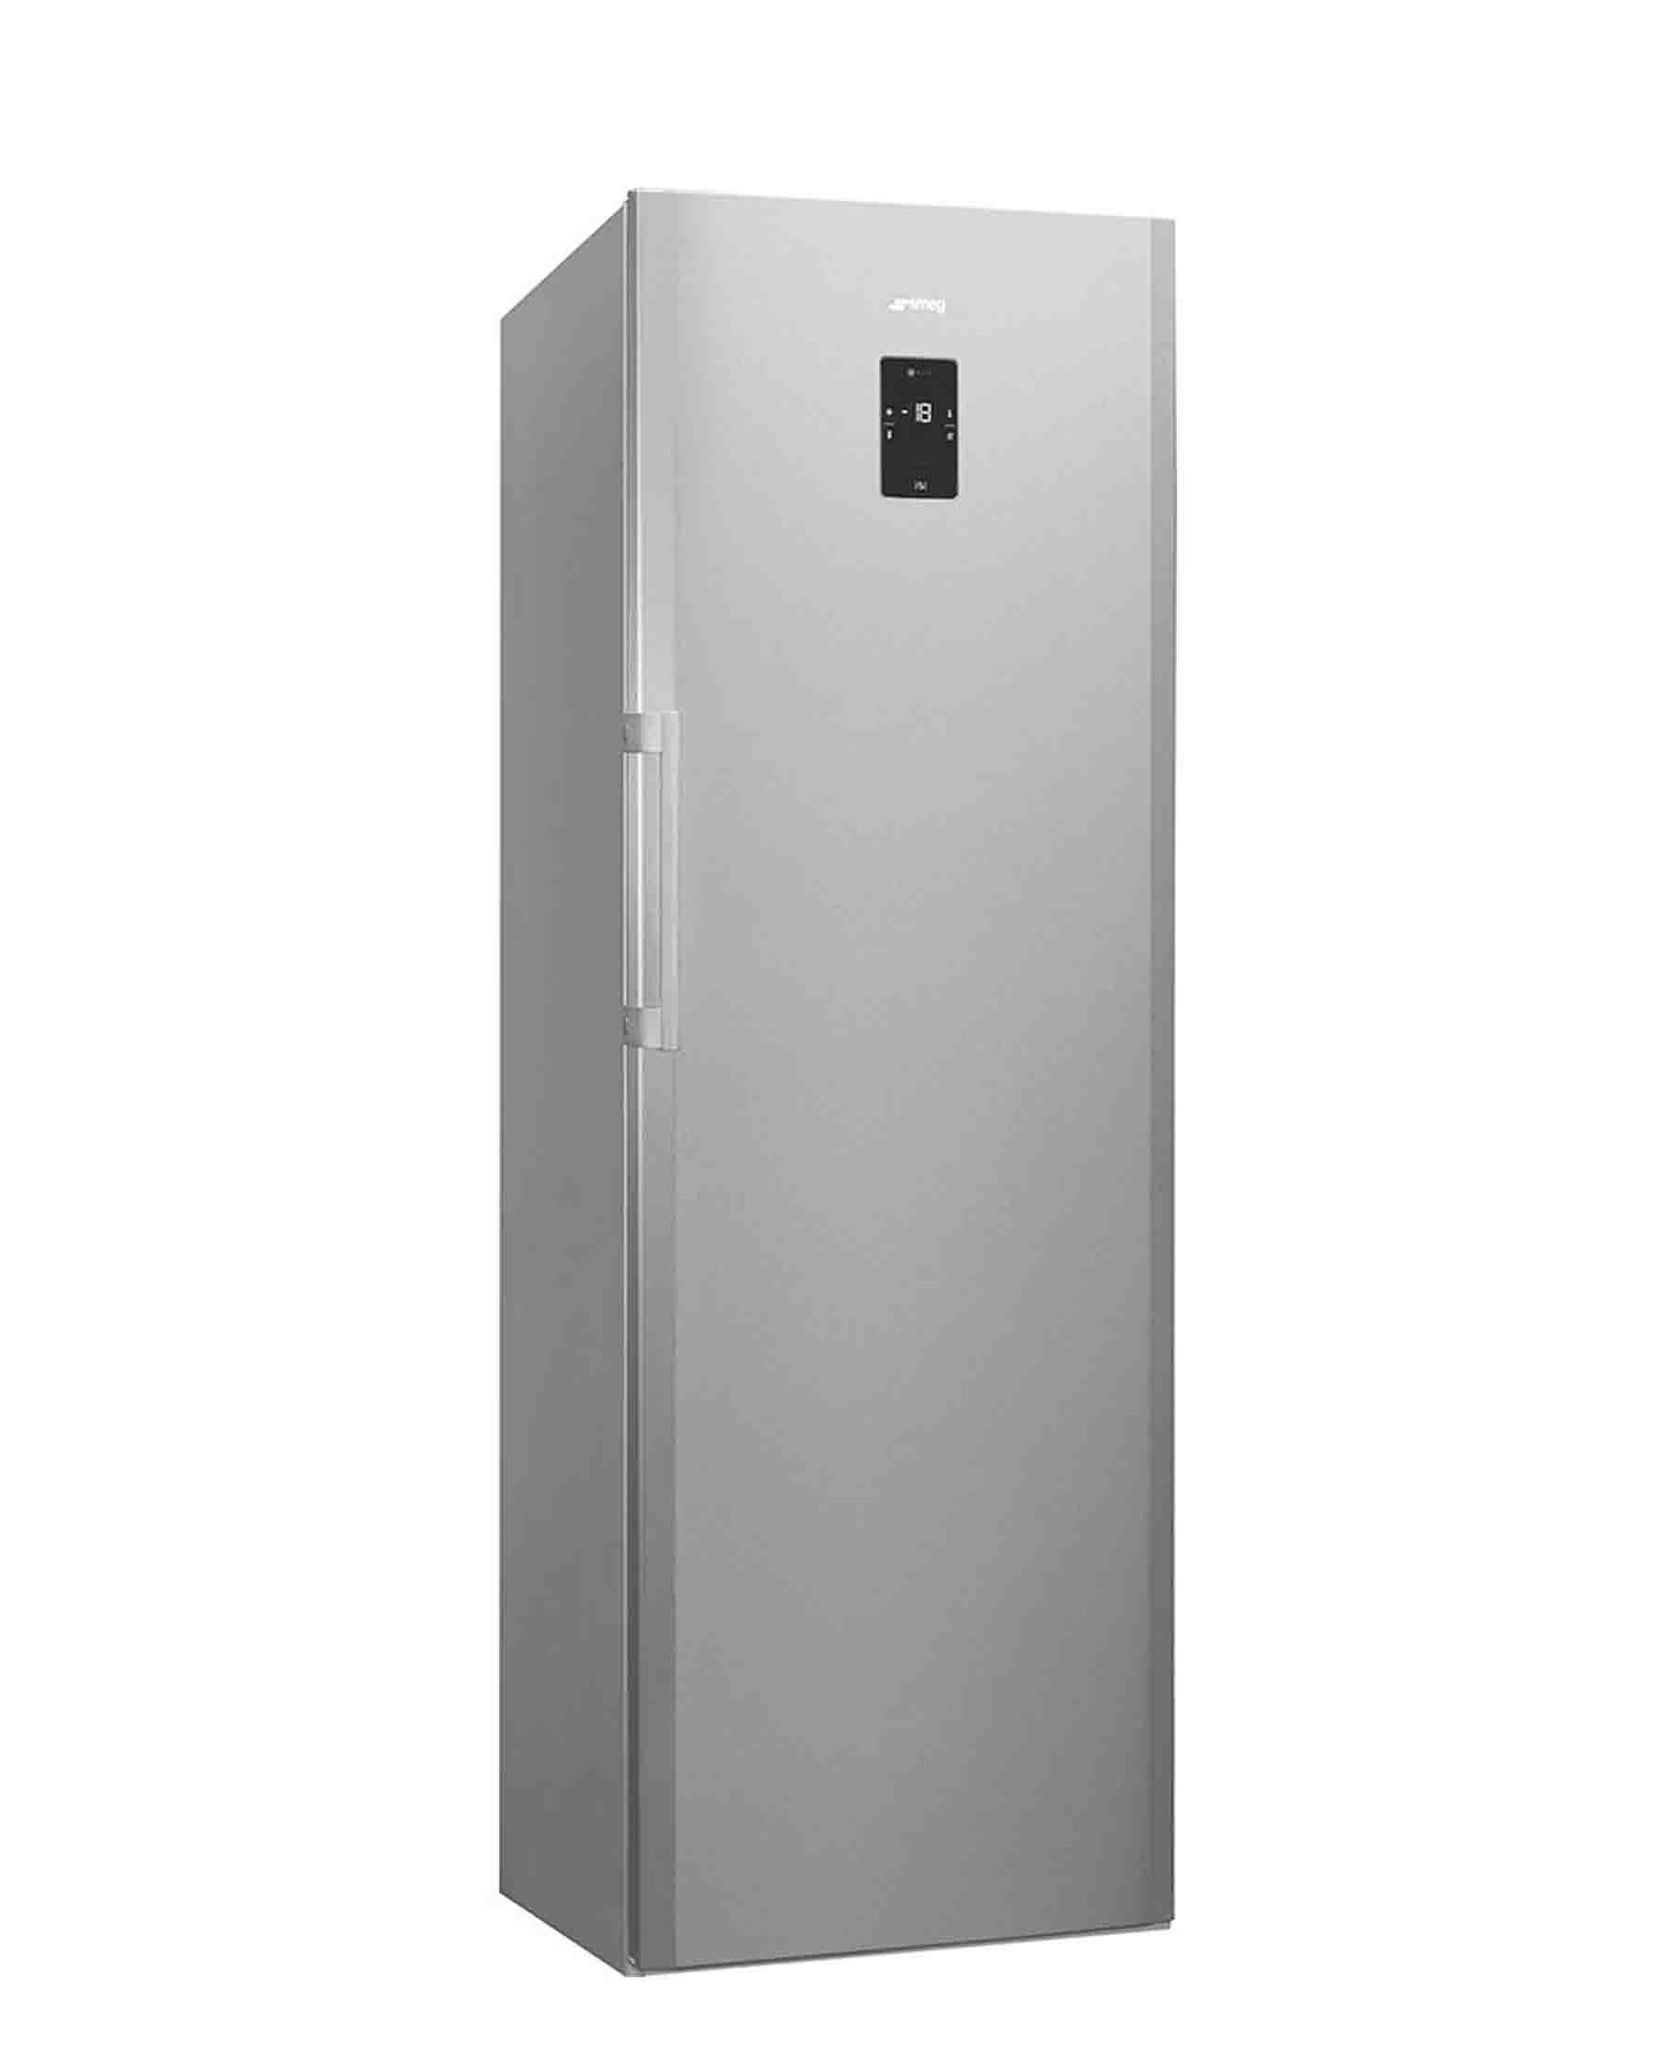 AEG 260L Upright Cabinet Freezer AGB53011NX - Silver